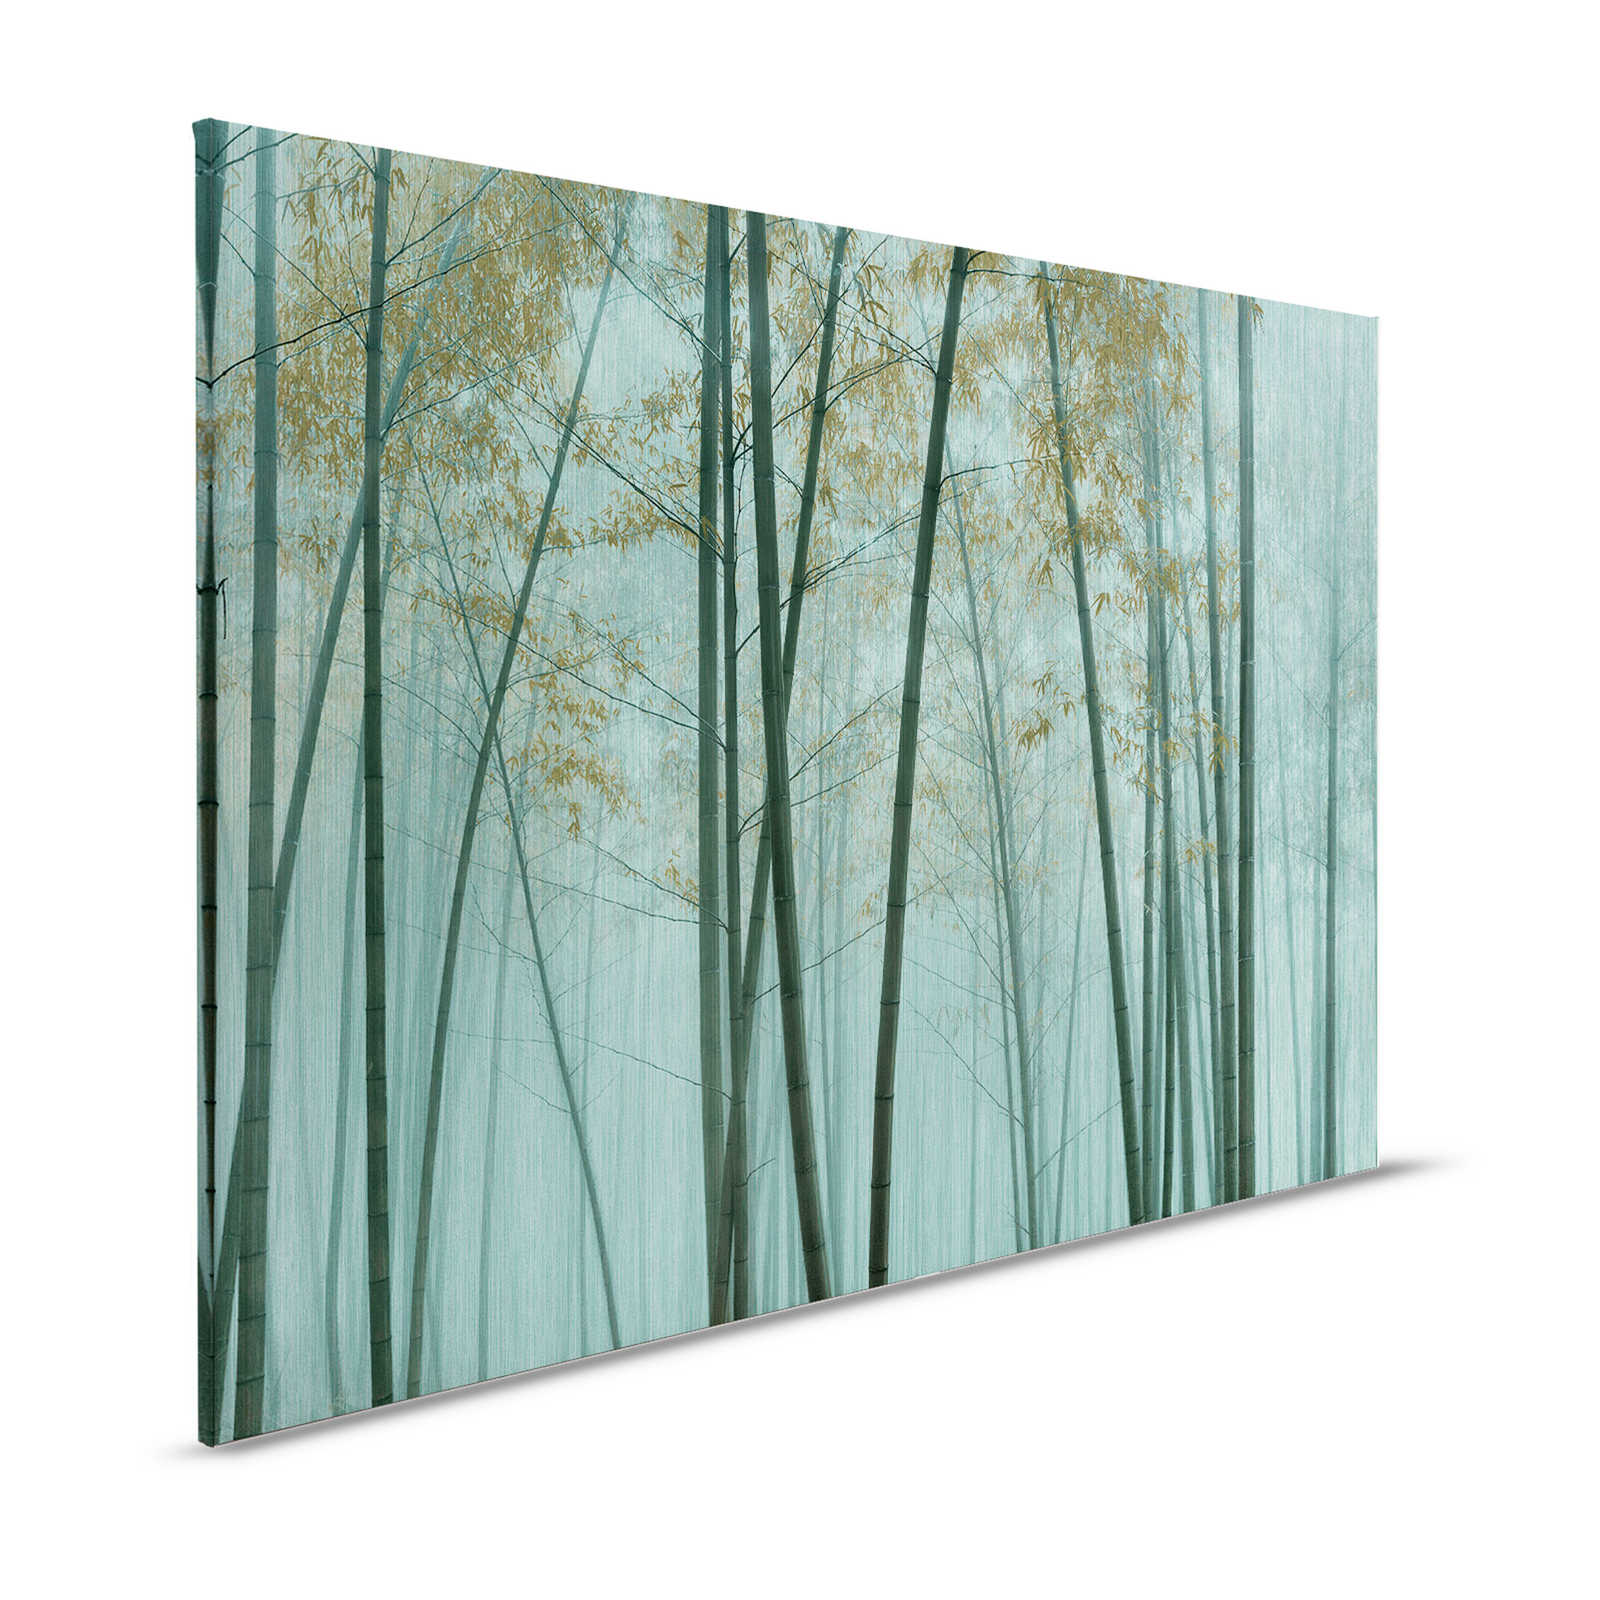 Nel bambù 3 - Asia Quadro su tela Foresta di bambù - 1,20 m x 0,80 m
